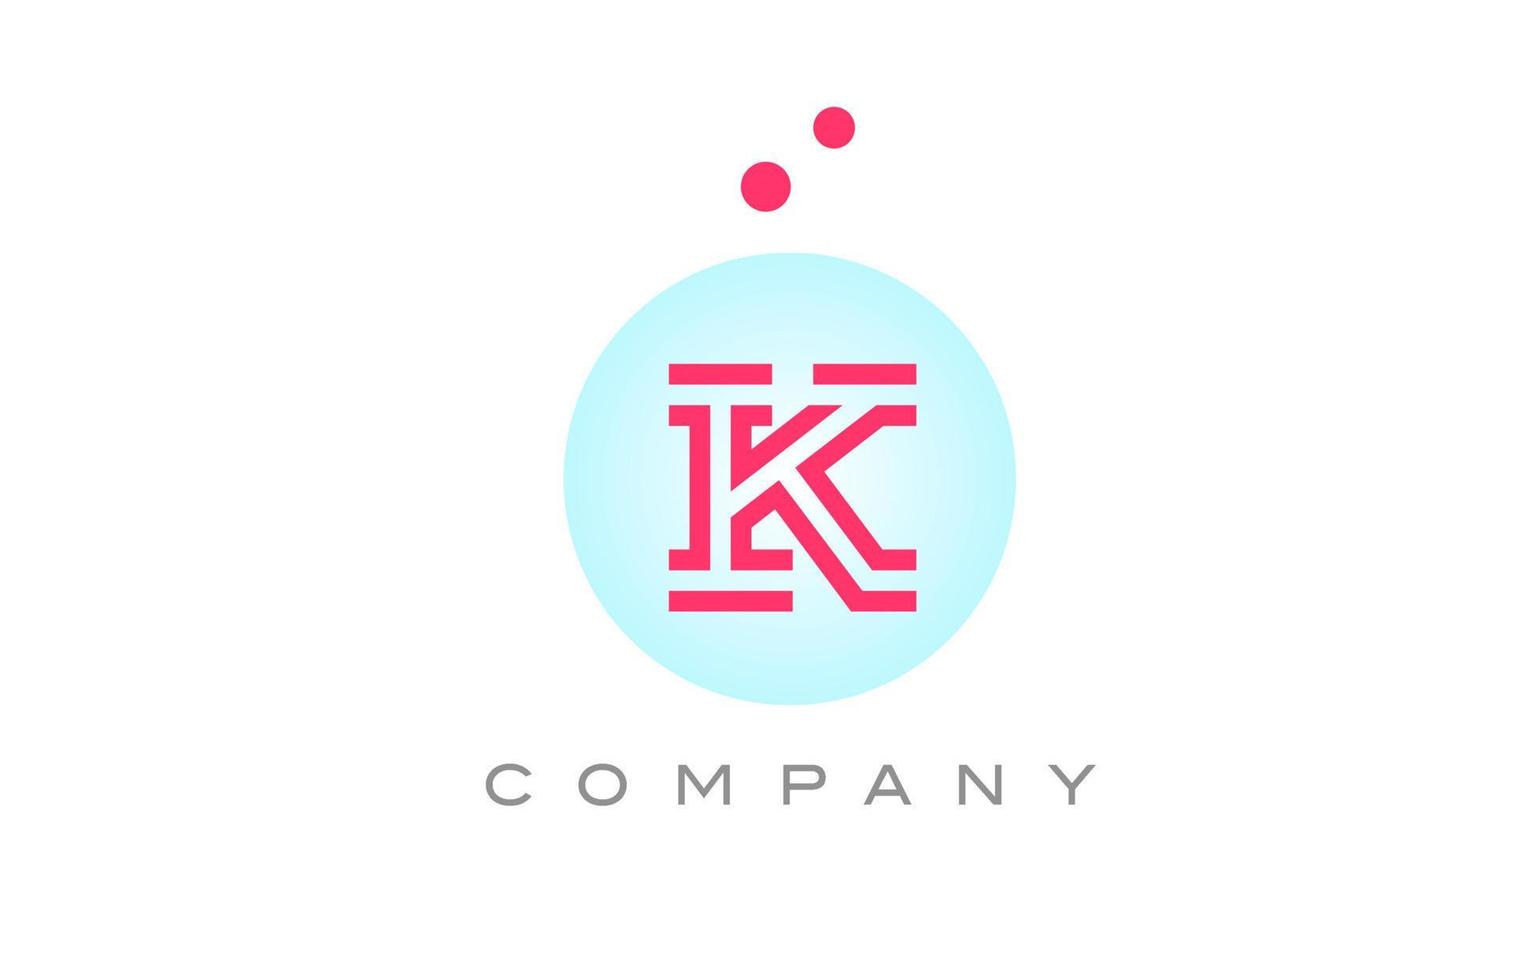 blu rosa K alfabeto lettera logo icona design con punti. creativo modello per attività commerciale e azienda vettore